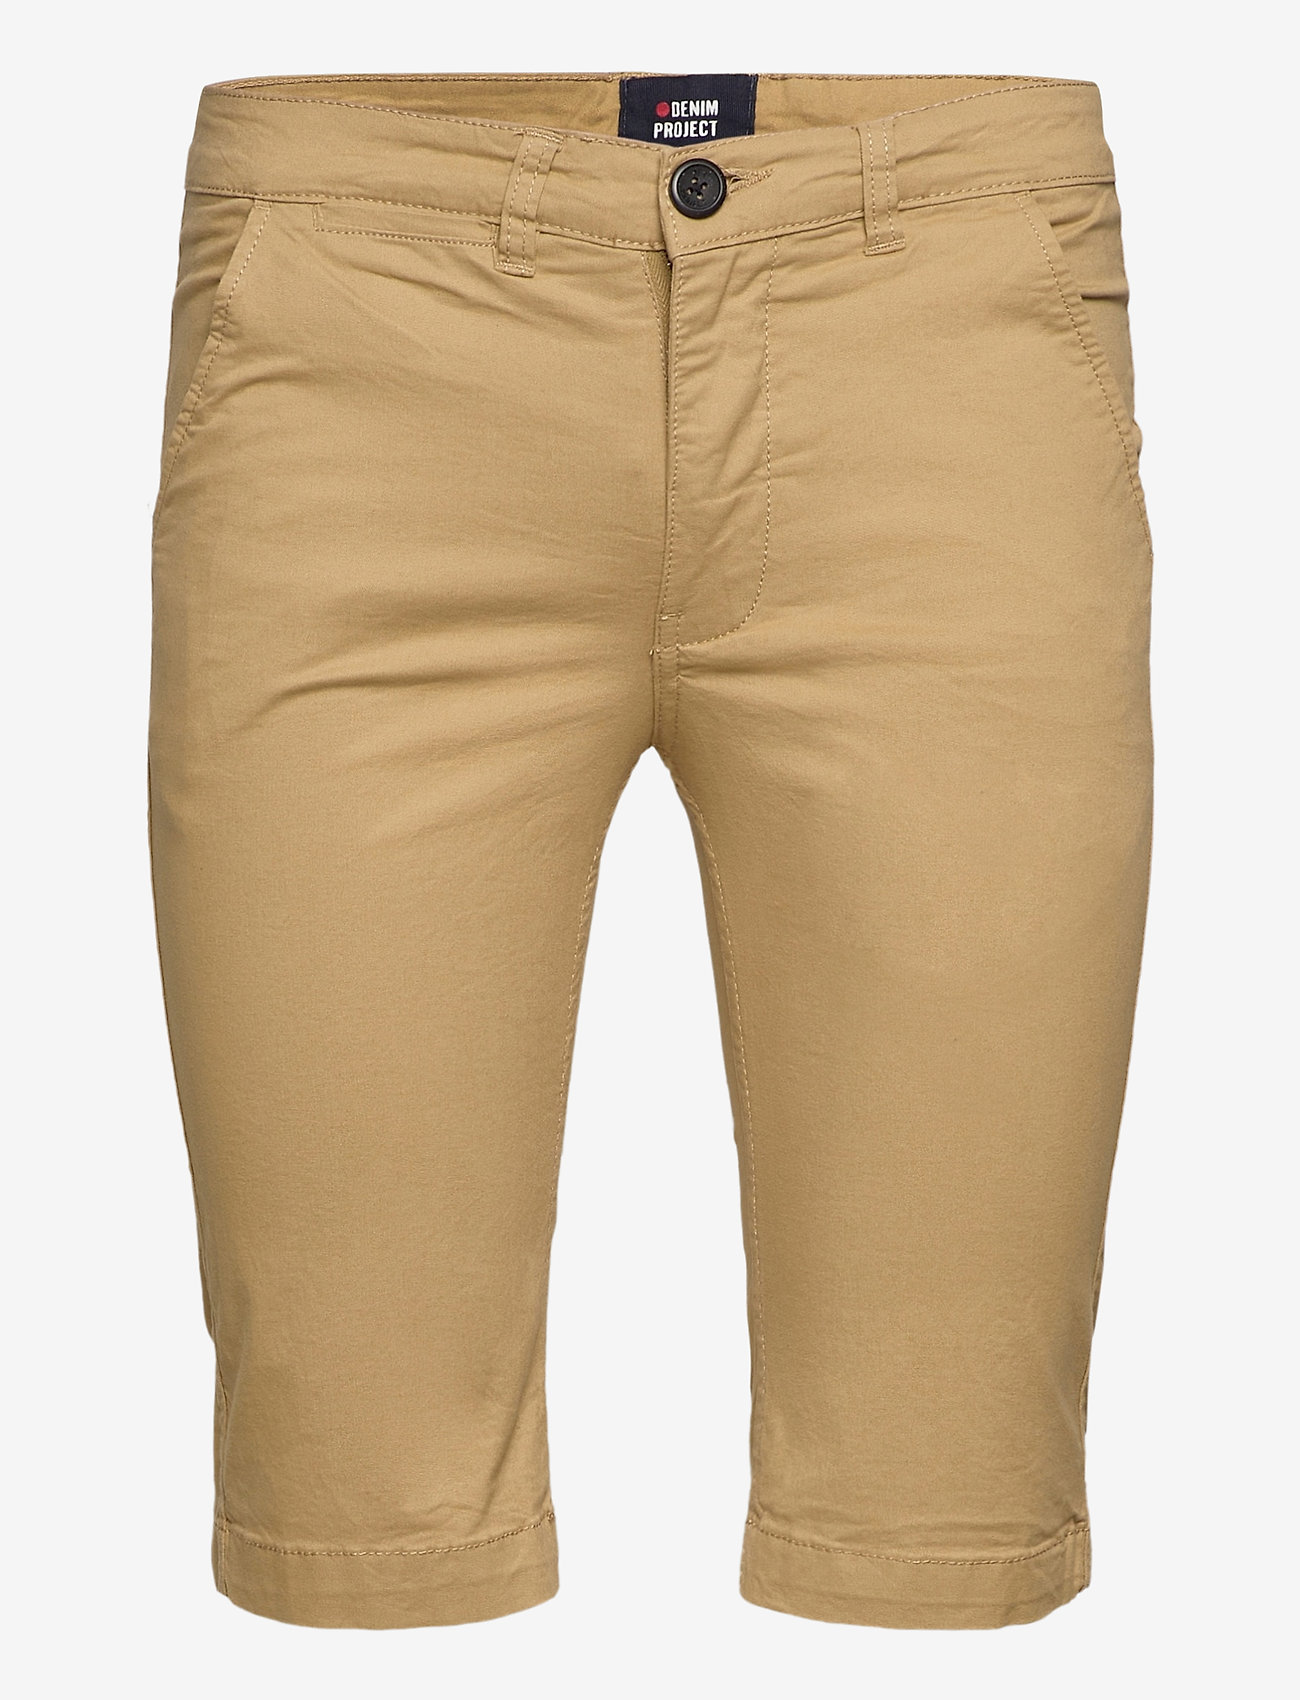 Denim project - DPKADIR SHORTS - chinos shorts - kaki - 0